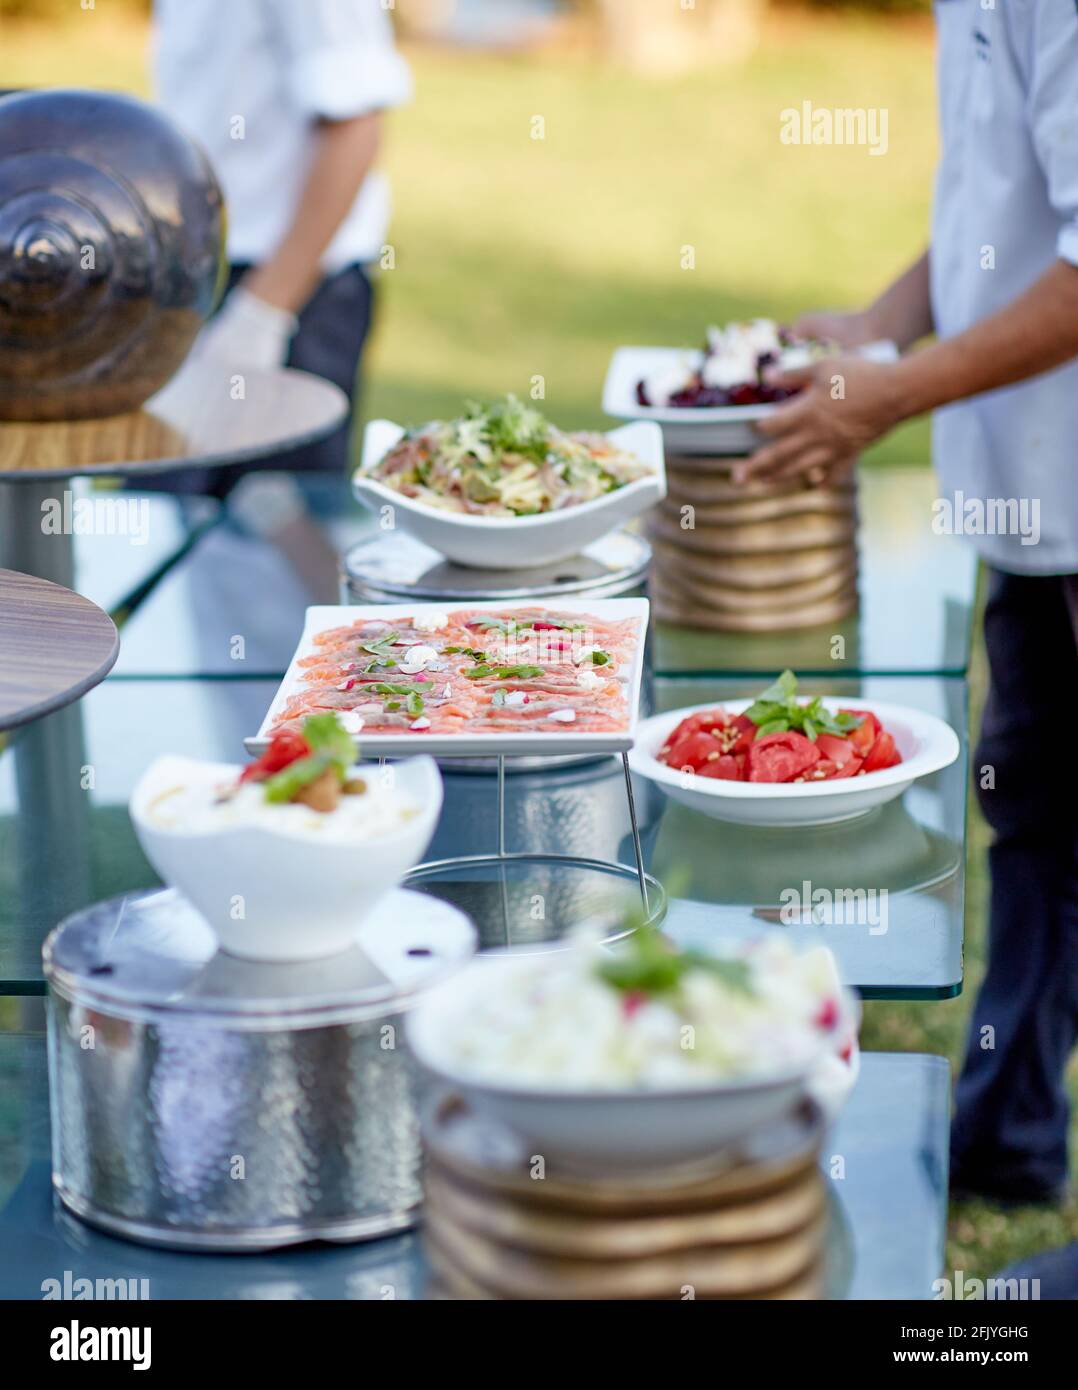 Catering all'aperto per banchetti in estate. Tavolo con spuntini, tartine e frutta in un banchetto estivo Foto Stock